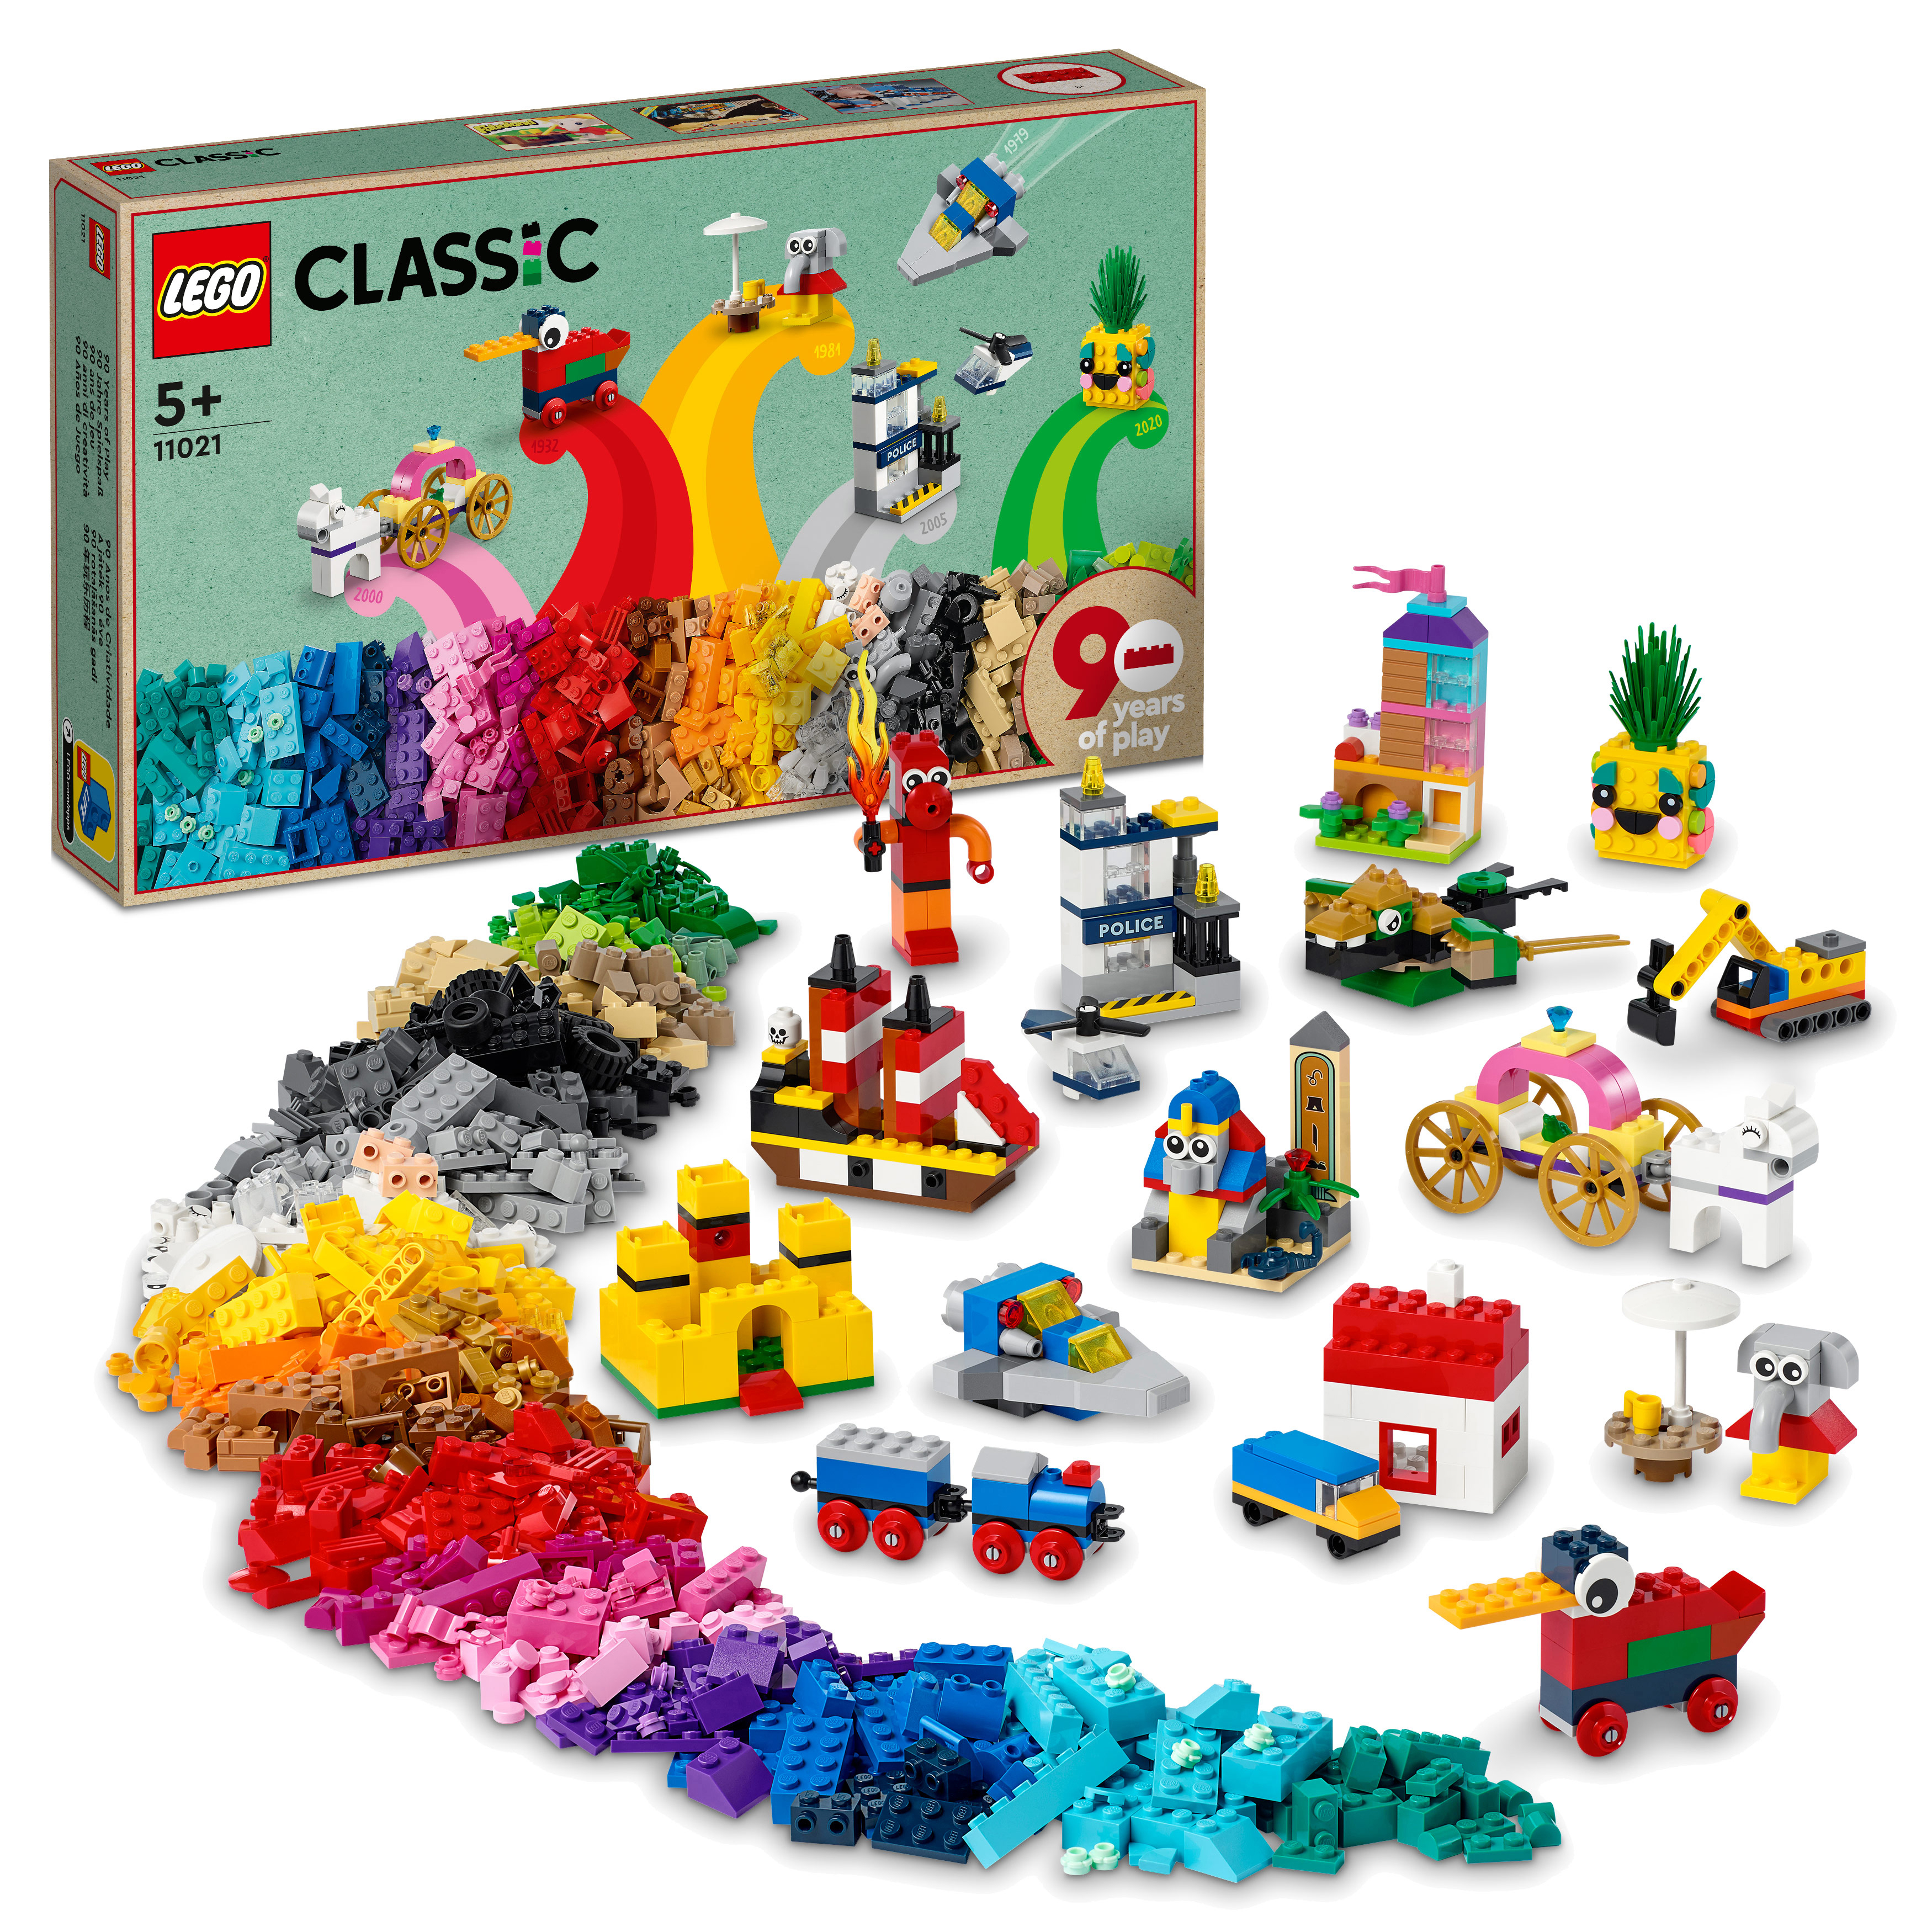 Classic 11021 Jahre 90 LEGO Bausatz, Spielspaß Mehrfarbig